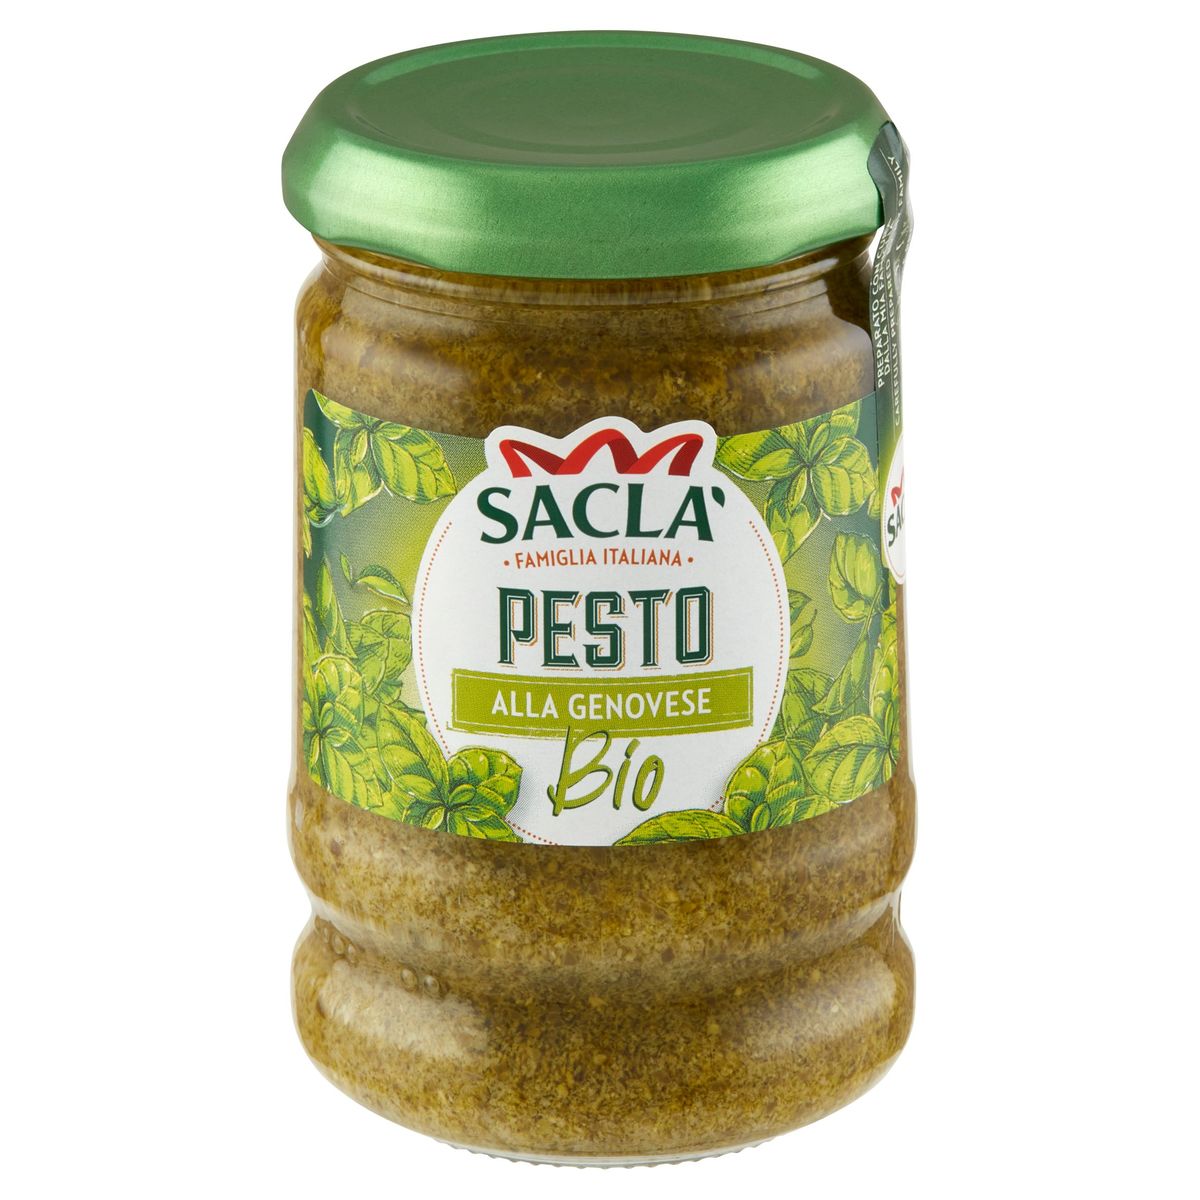 Sacla Pesto alla Genovese Bio 190 g